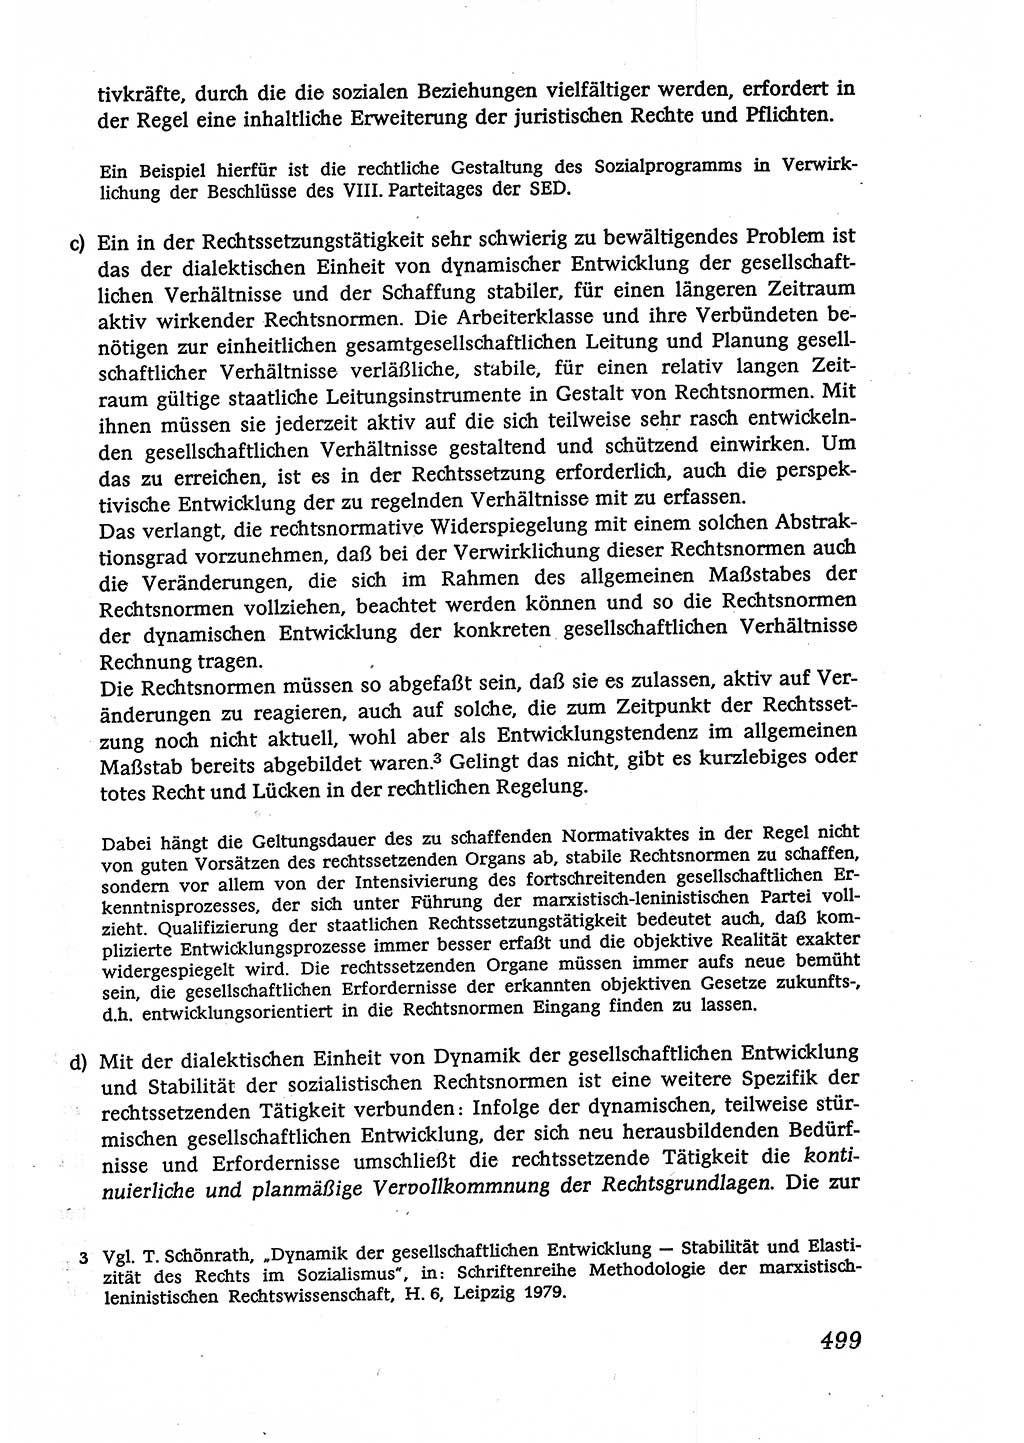 Marxistisch-leninistische (ML) Staats- und Rechtstheorie [Deutsche Demokratische Republik (DDR)], Lehrbuch 1980, Seite 499 (ML St.-R.-Th. DDR Lb. 1980, S. 499)